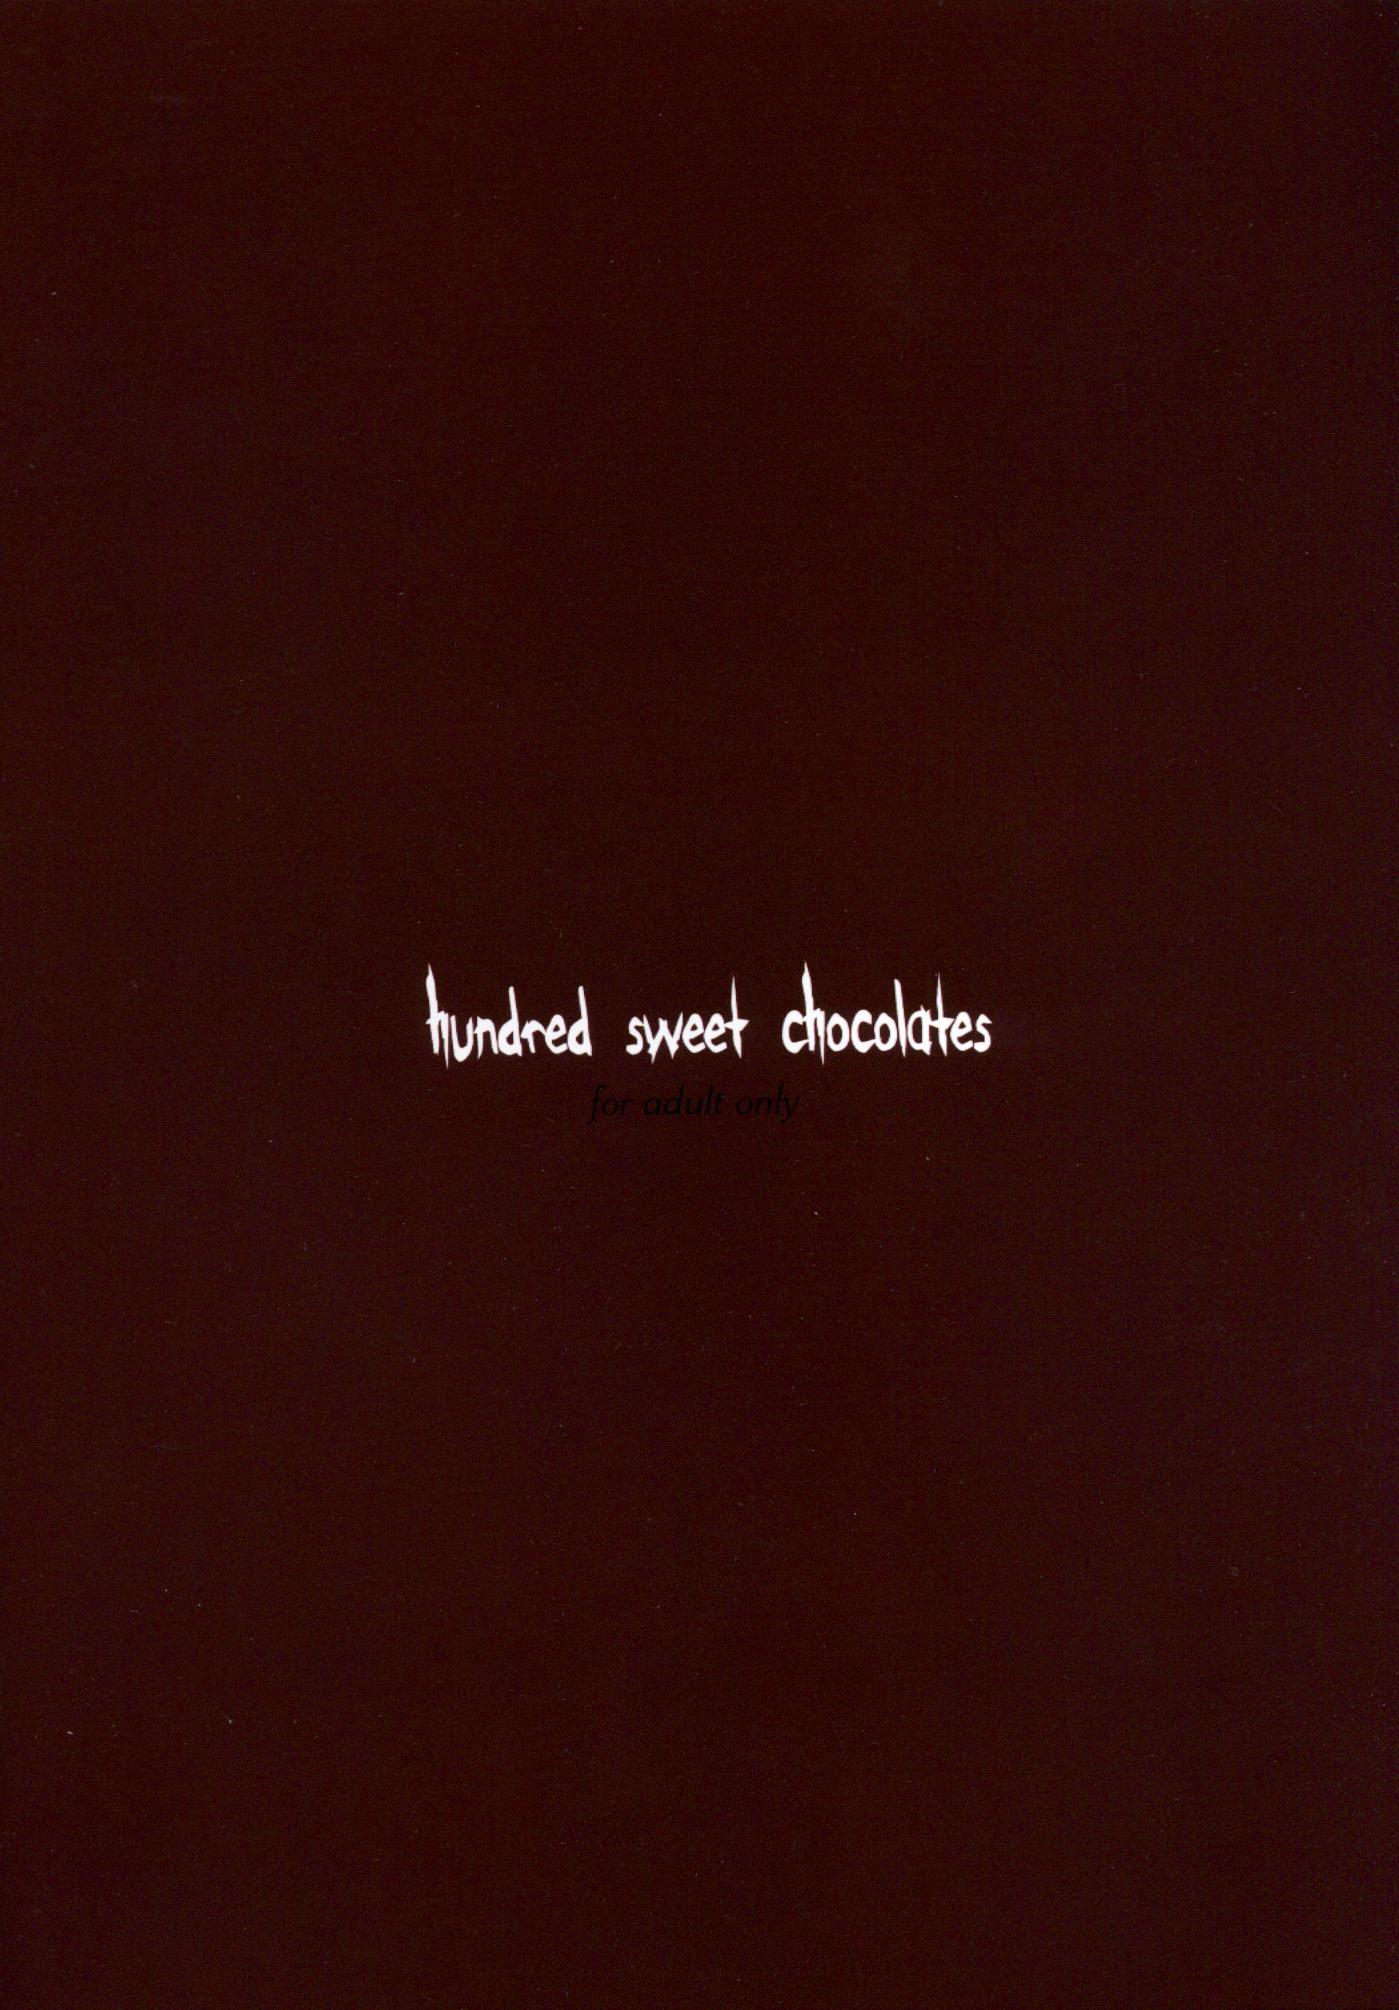 hundred sweet chocolates 11